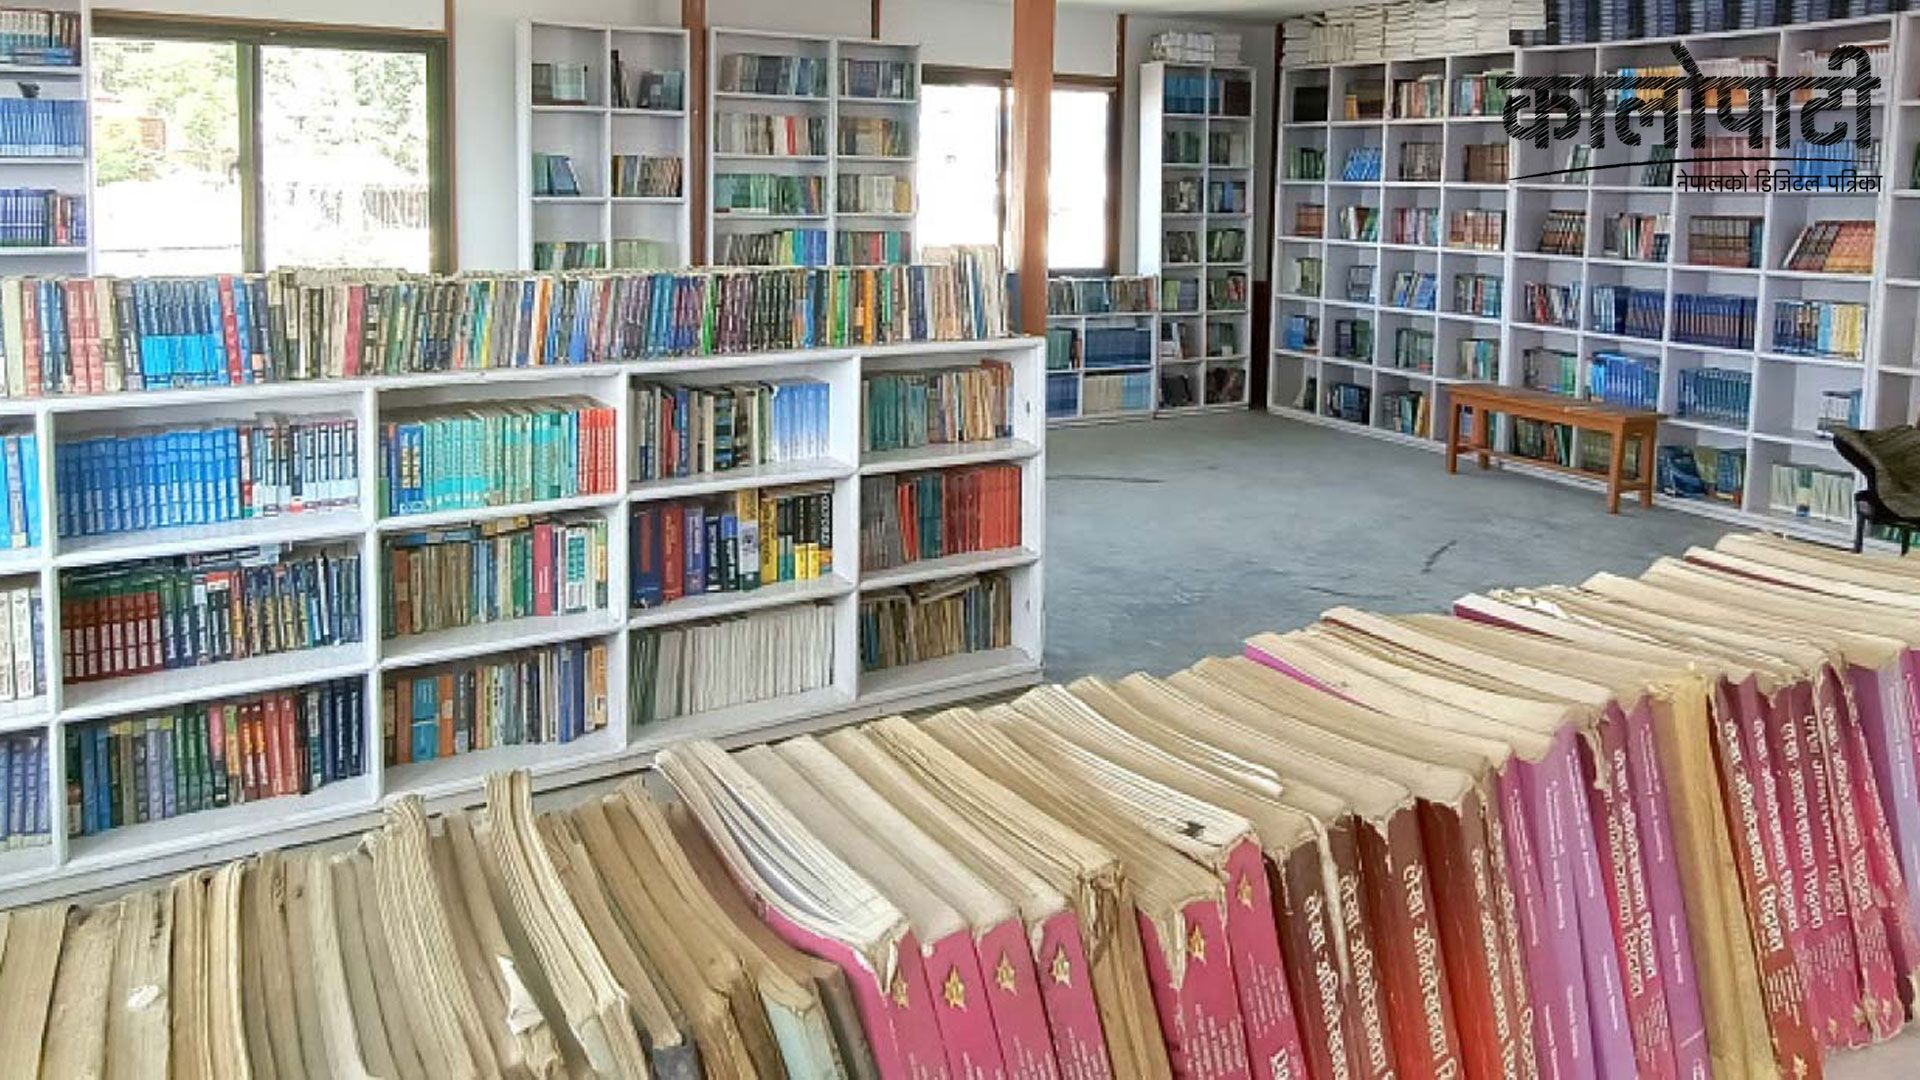 दोलखाका समाजसेवी श्रेष्ठद्धारा पत्नीको सम्झनामा सामुदायिक क्याम्पसमा पुस्तकालय निर्माण